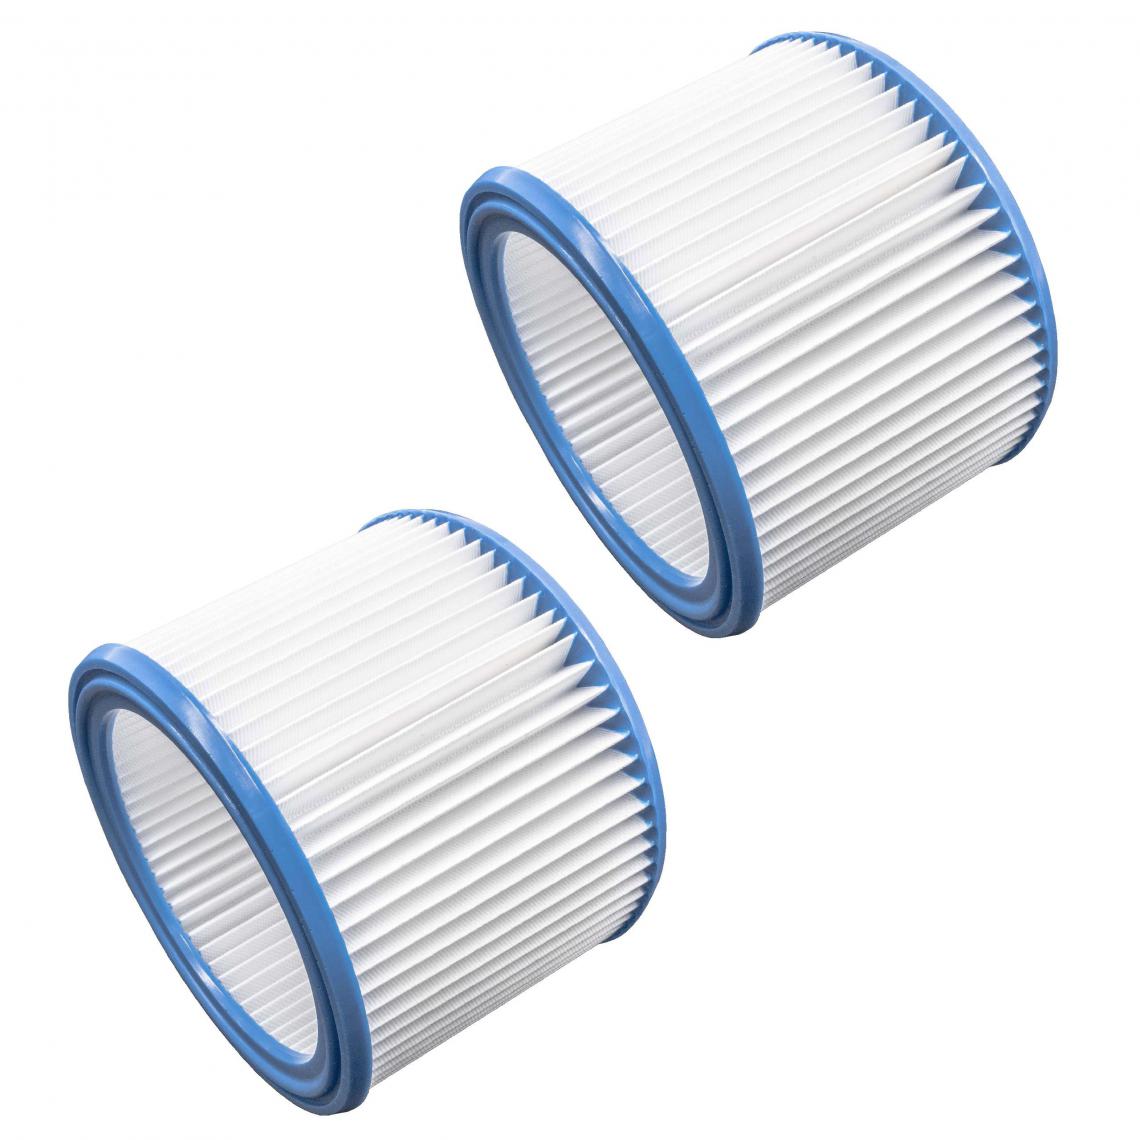 Vhbw - vhbw Set de filtres 2x Filtre plissé compatible avec WAP EC-380 E, EURO 45522, ST 10, ST 15, ST 20 aspirateur à sec ou humide - Filtre à cartouche - Accessoire entretien des sols